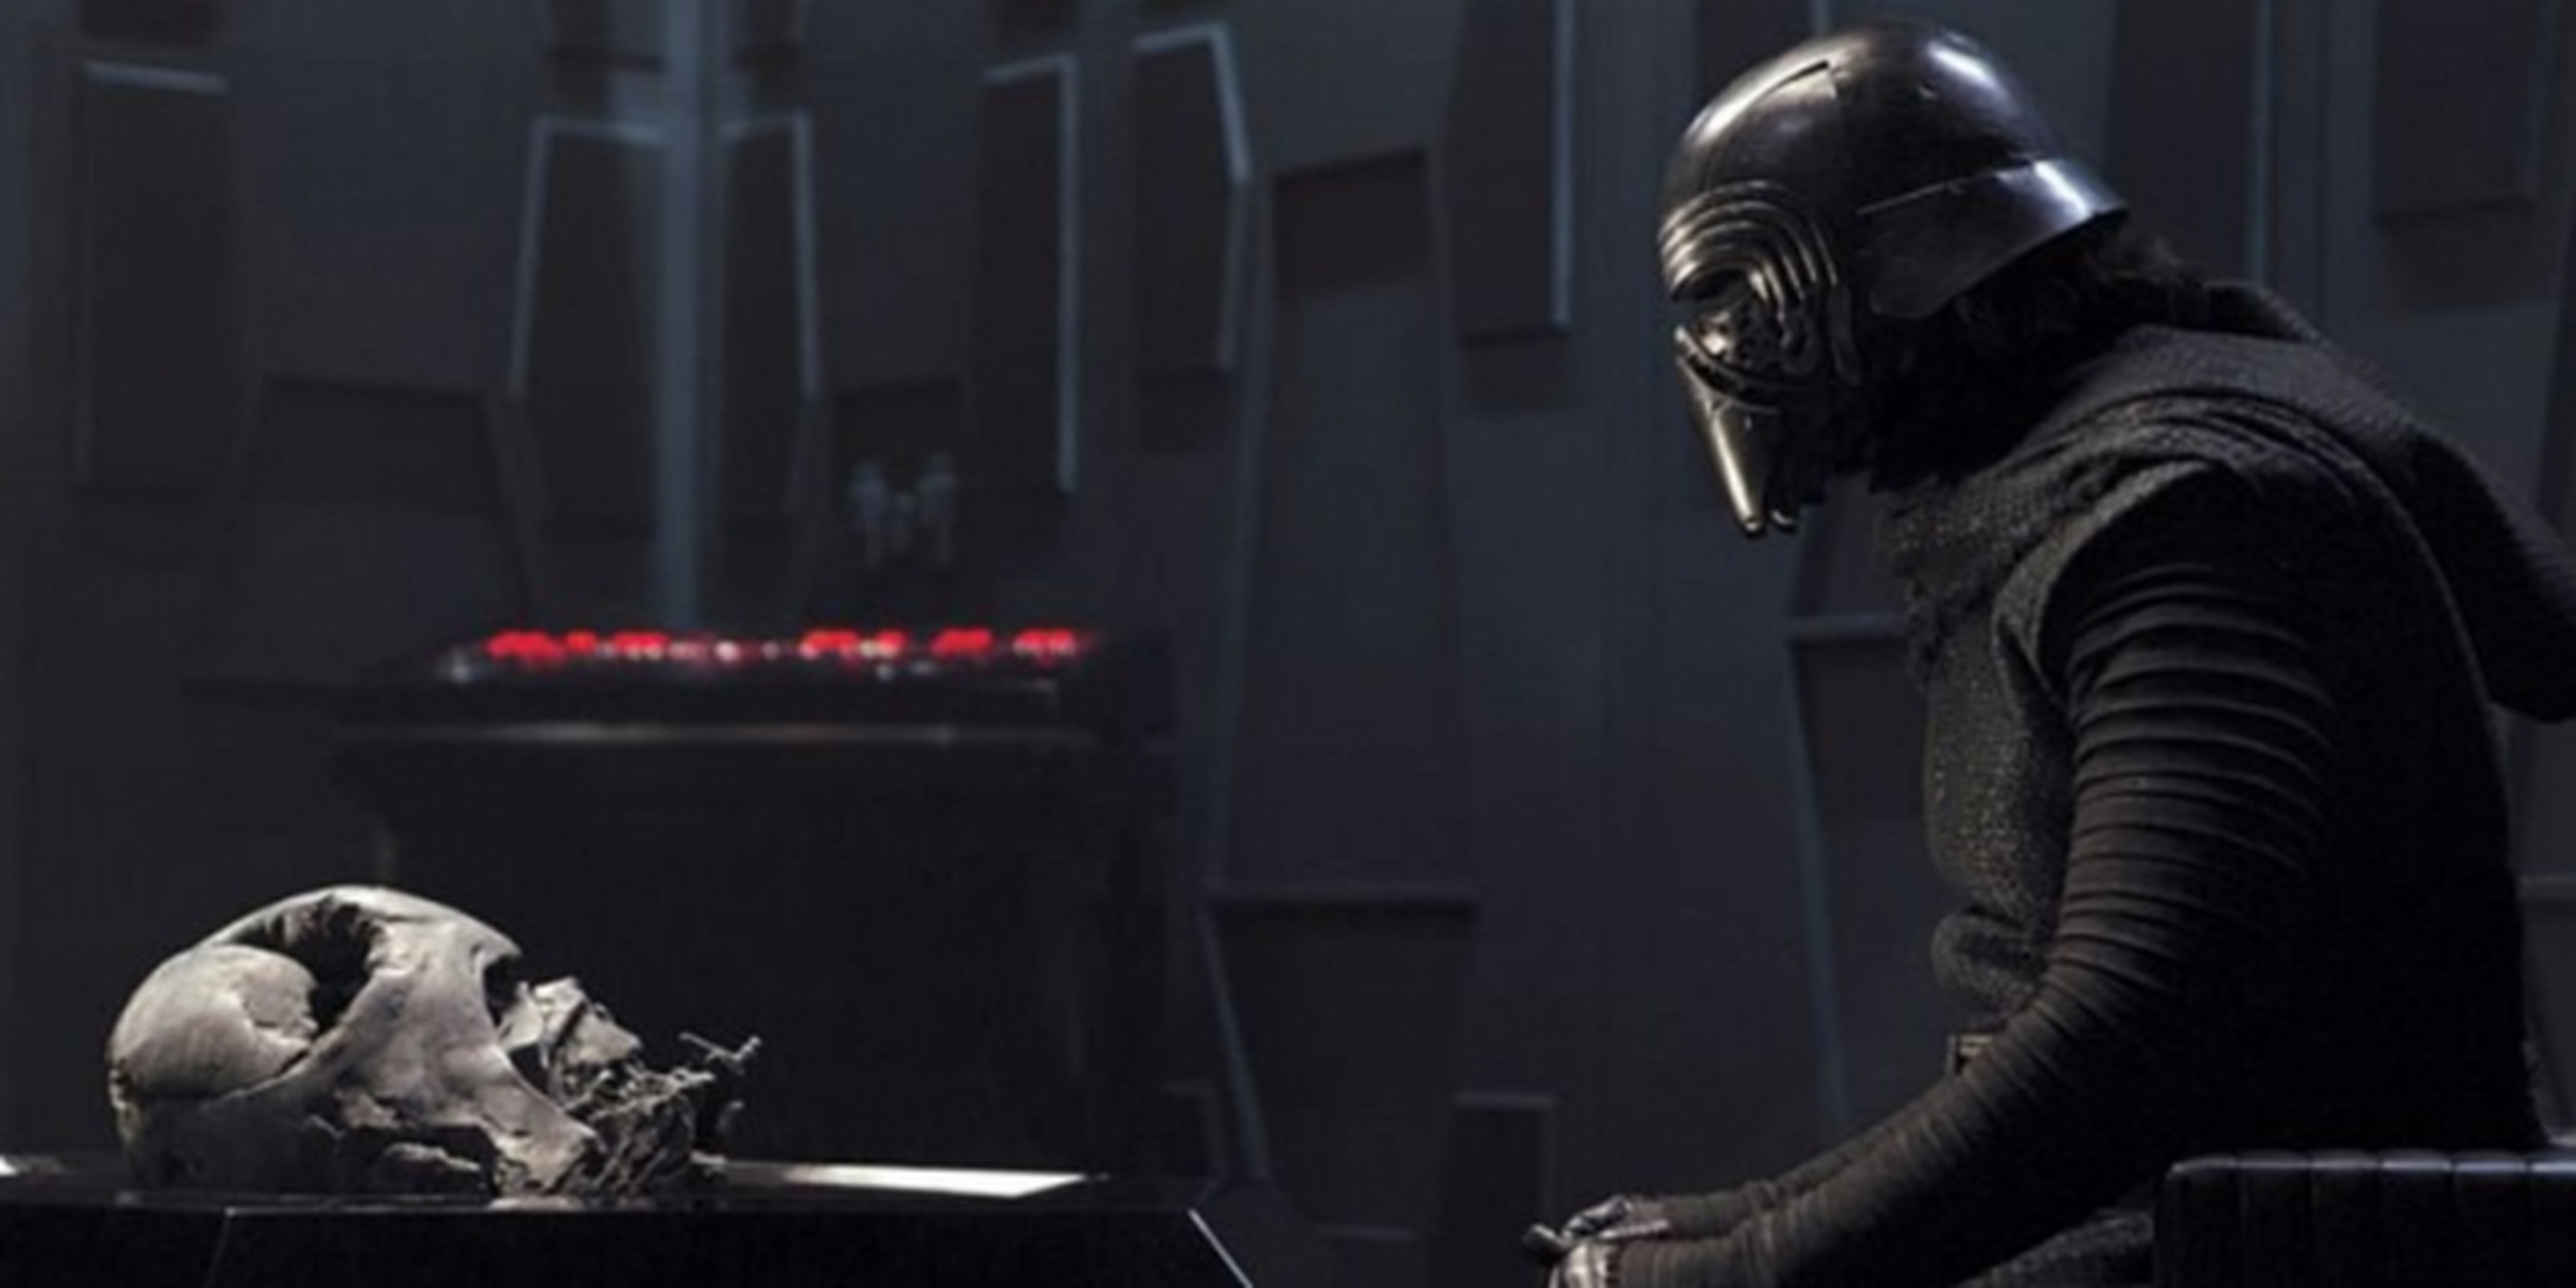 Star Wars Episodio VII El despertar de la Fuerza: Abrams explica la relación de Darth Vader y Kylo Ren (Spoiler)